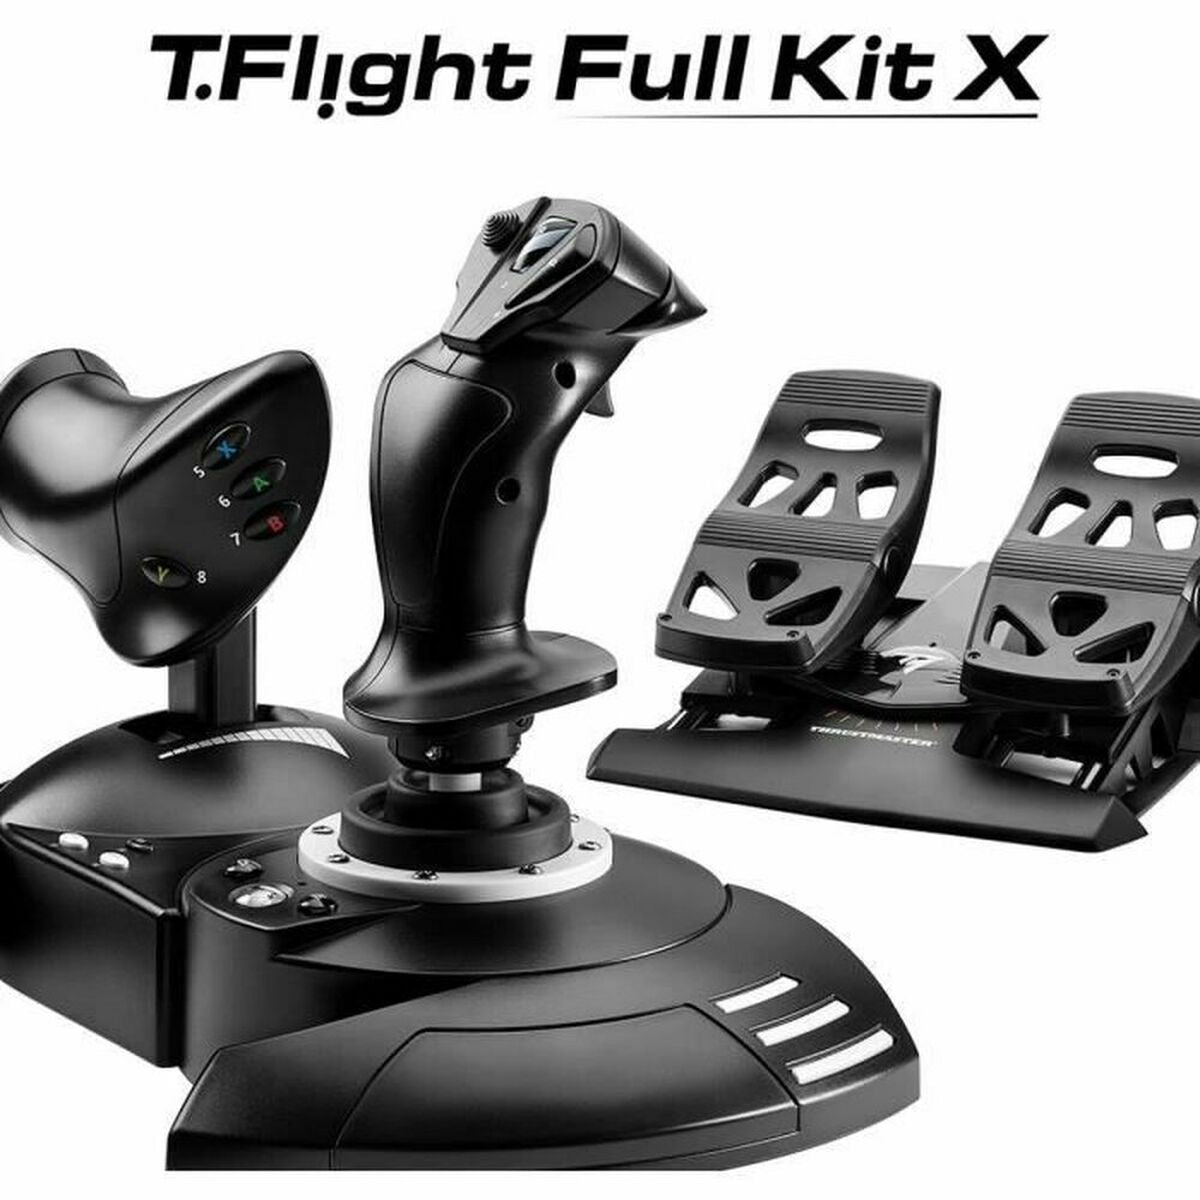 Thrustmaster T.Flight Full Kit X kabellose Gaming-Steuerung